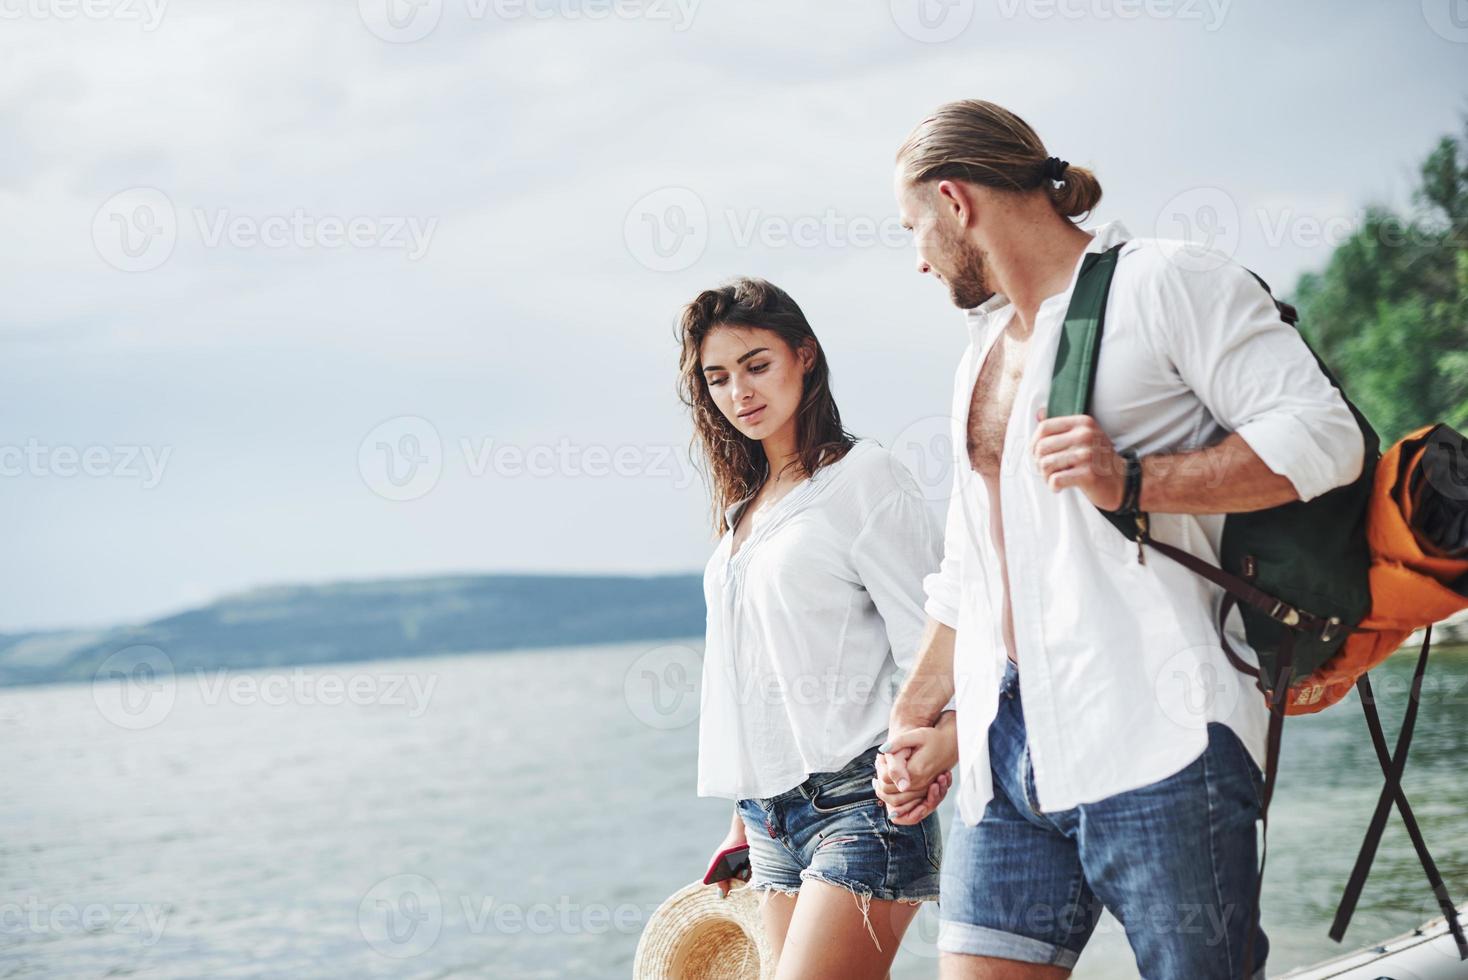 Alegre paseo de la encantadora pareja en el exterior en el fondo del lago foto